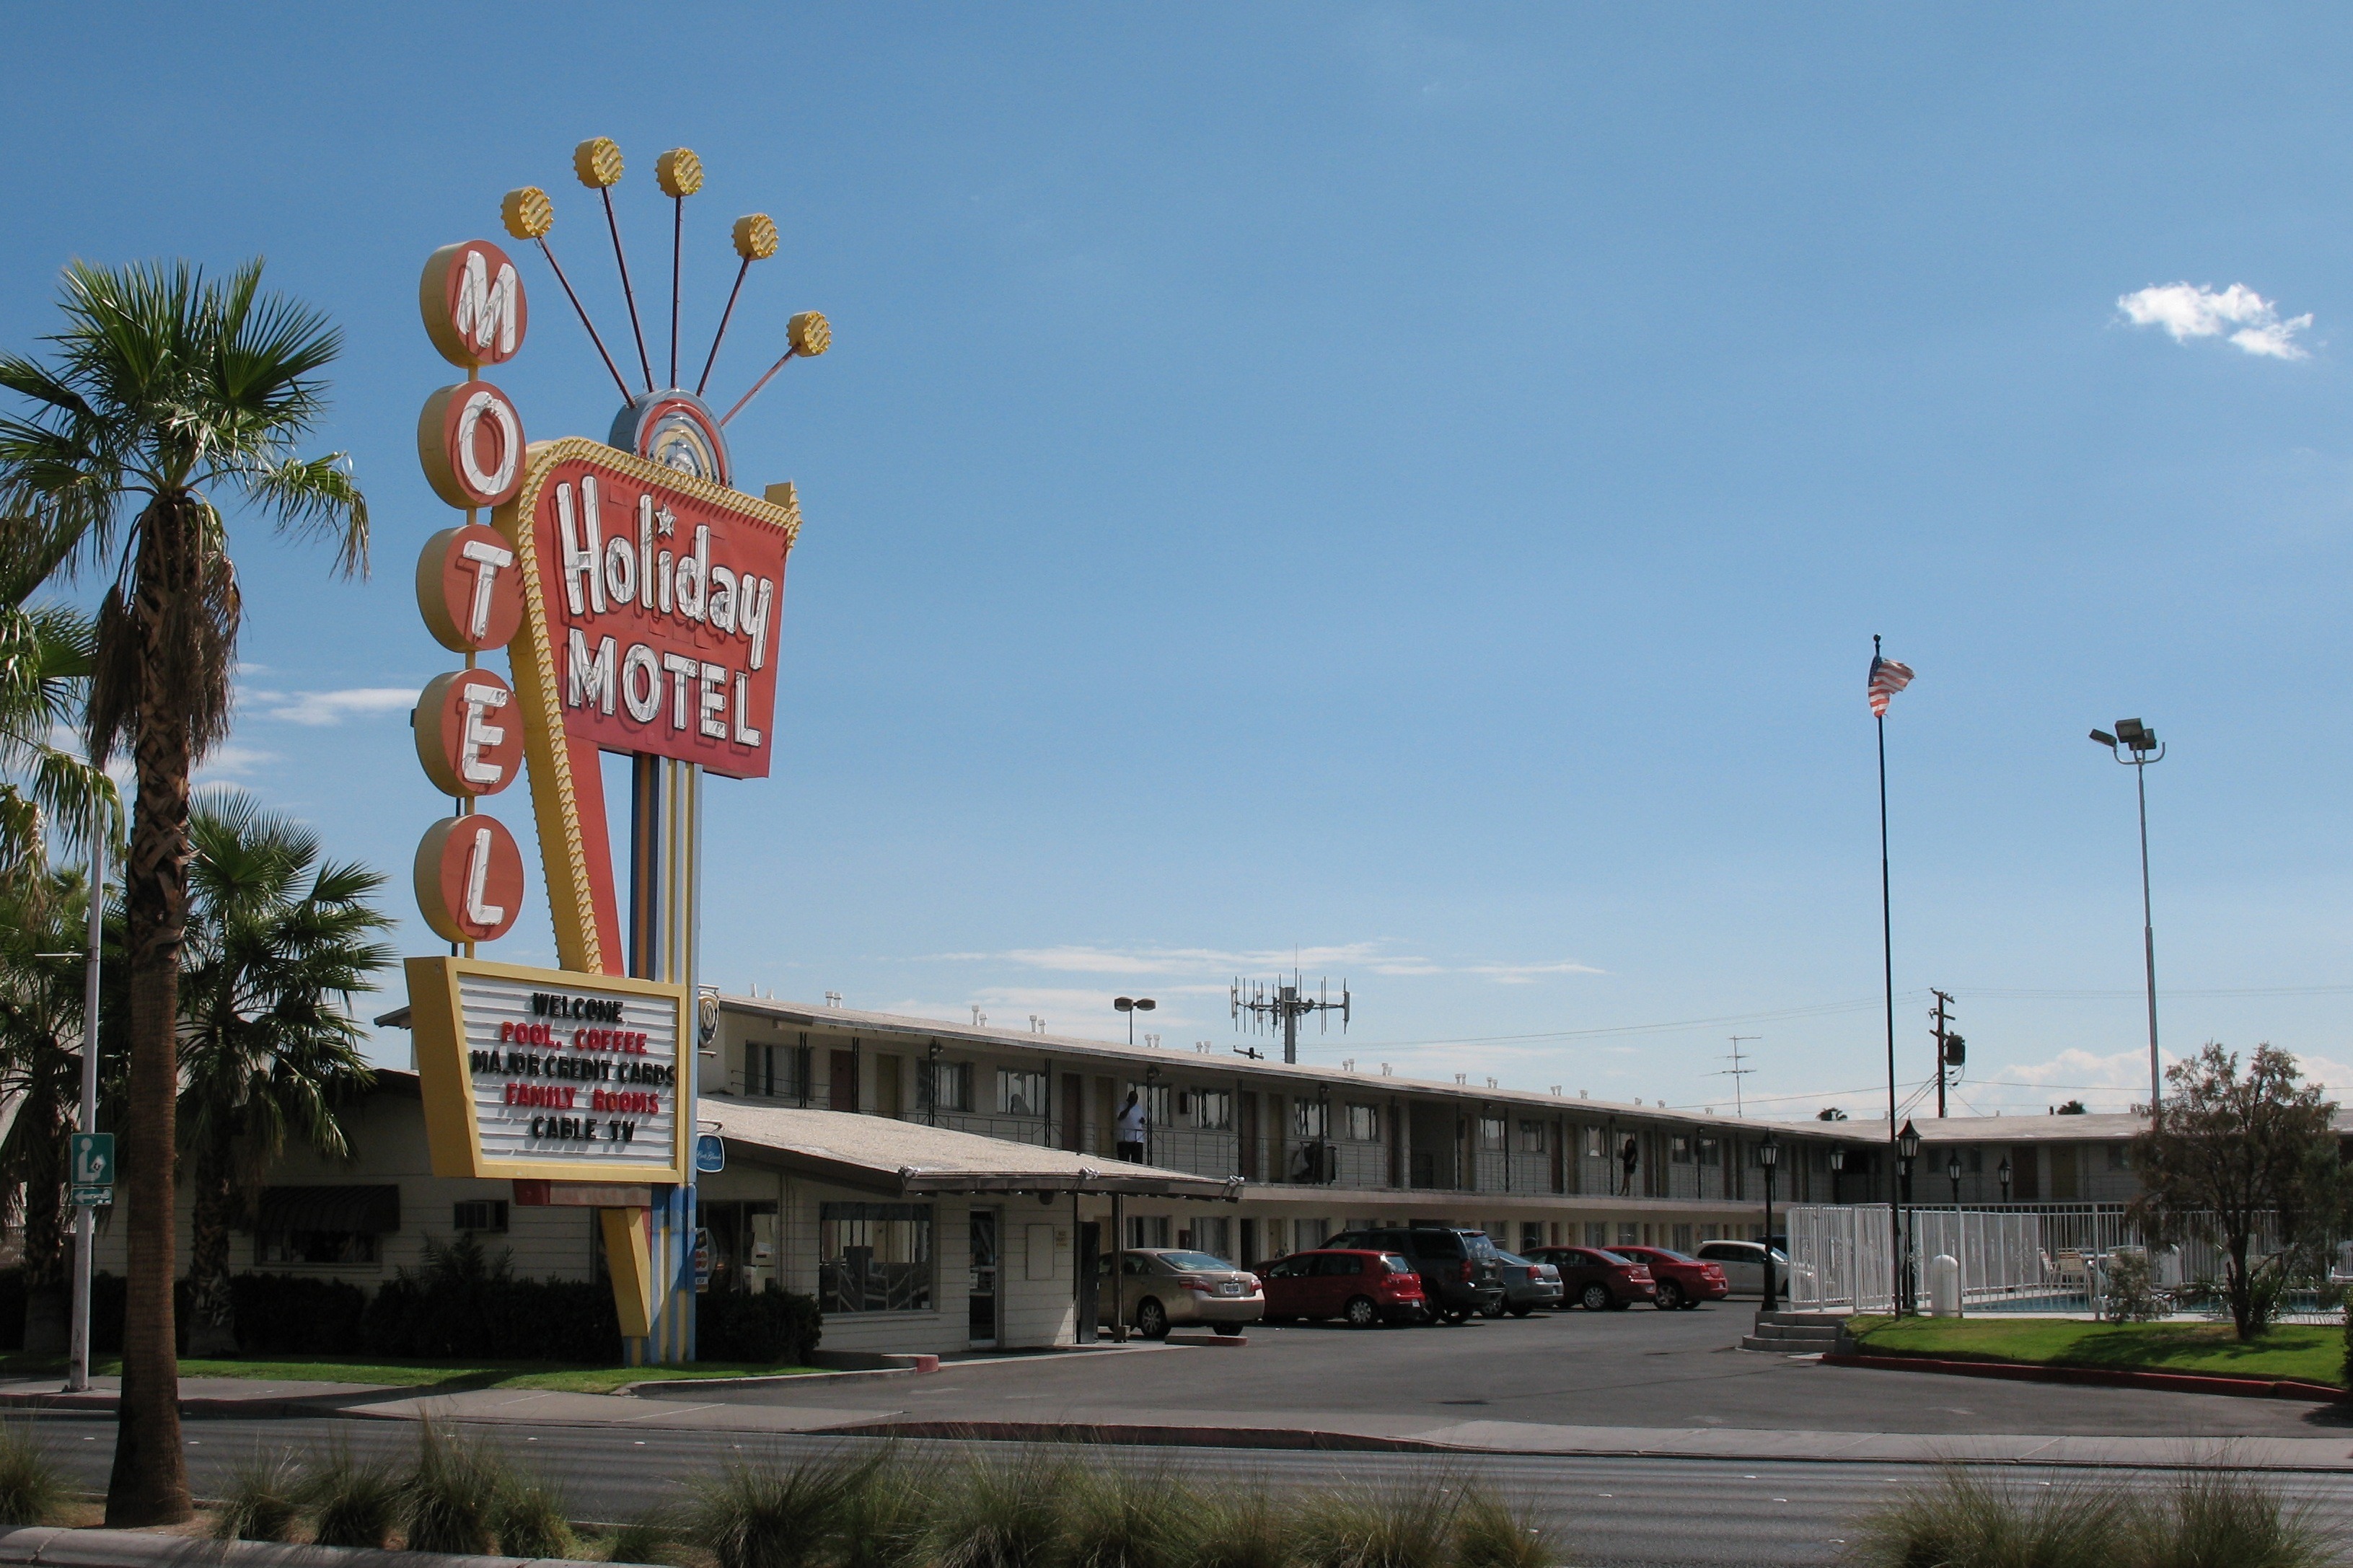 Holiday Motel Las Vegas Nv | photozzle